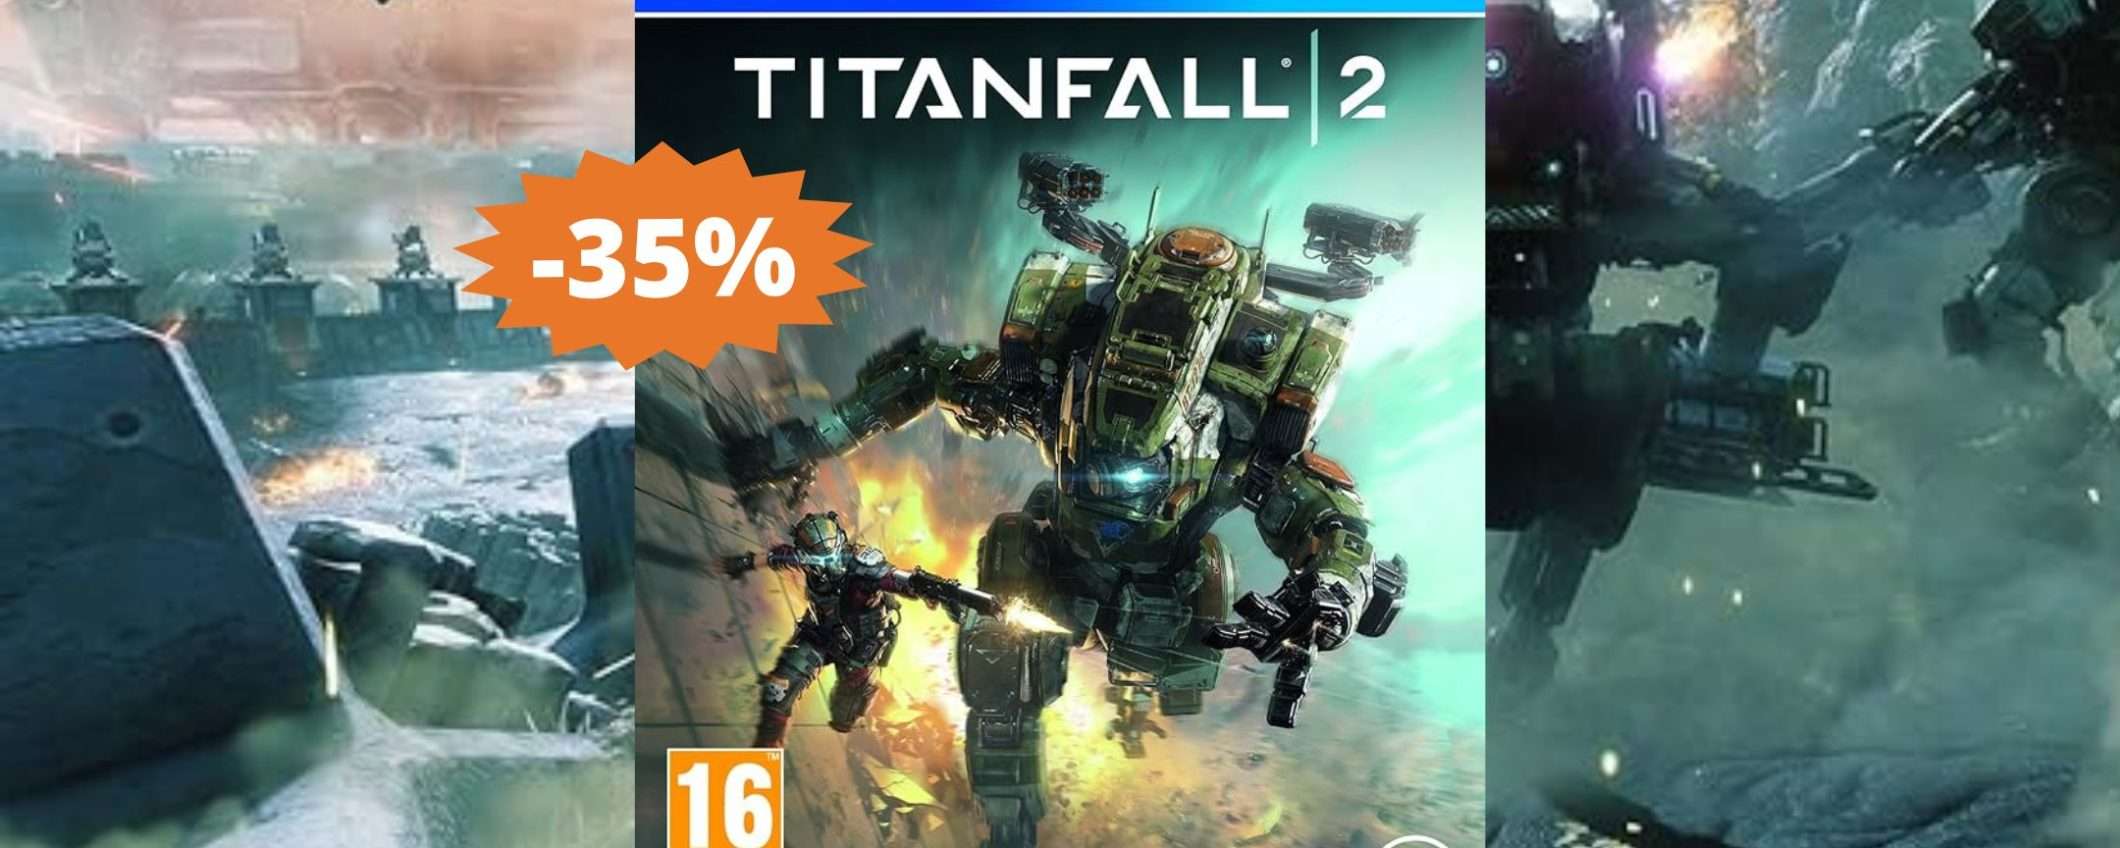 Titanfall 2 per PS4: una battaglia EPICA in MEGA sconto del 35%